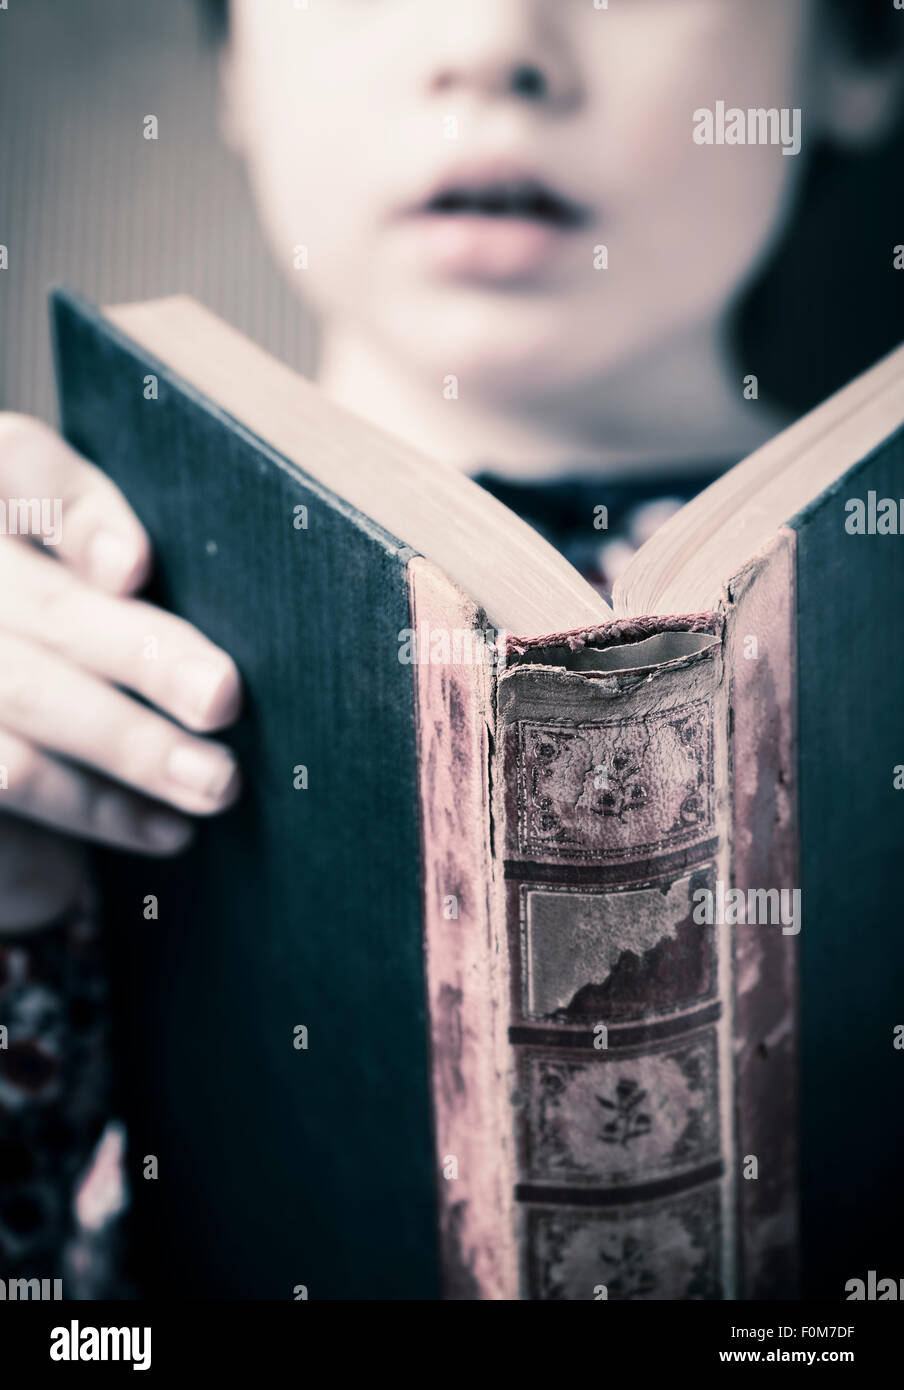 Kleines Mädchen in einem alten Buch lesen. Konzeptbild von Intelligenz und lernen in einem jungen Alter zu lesen. Stockfoto